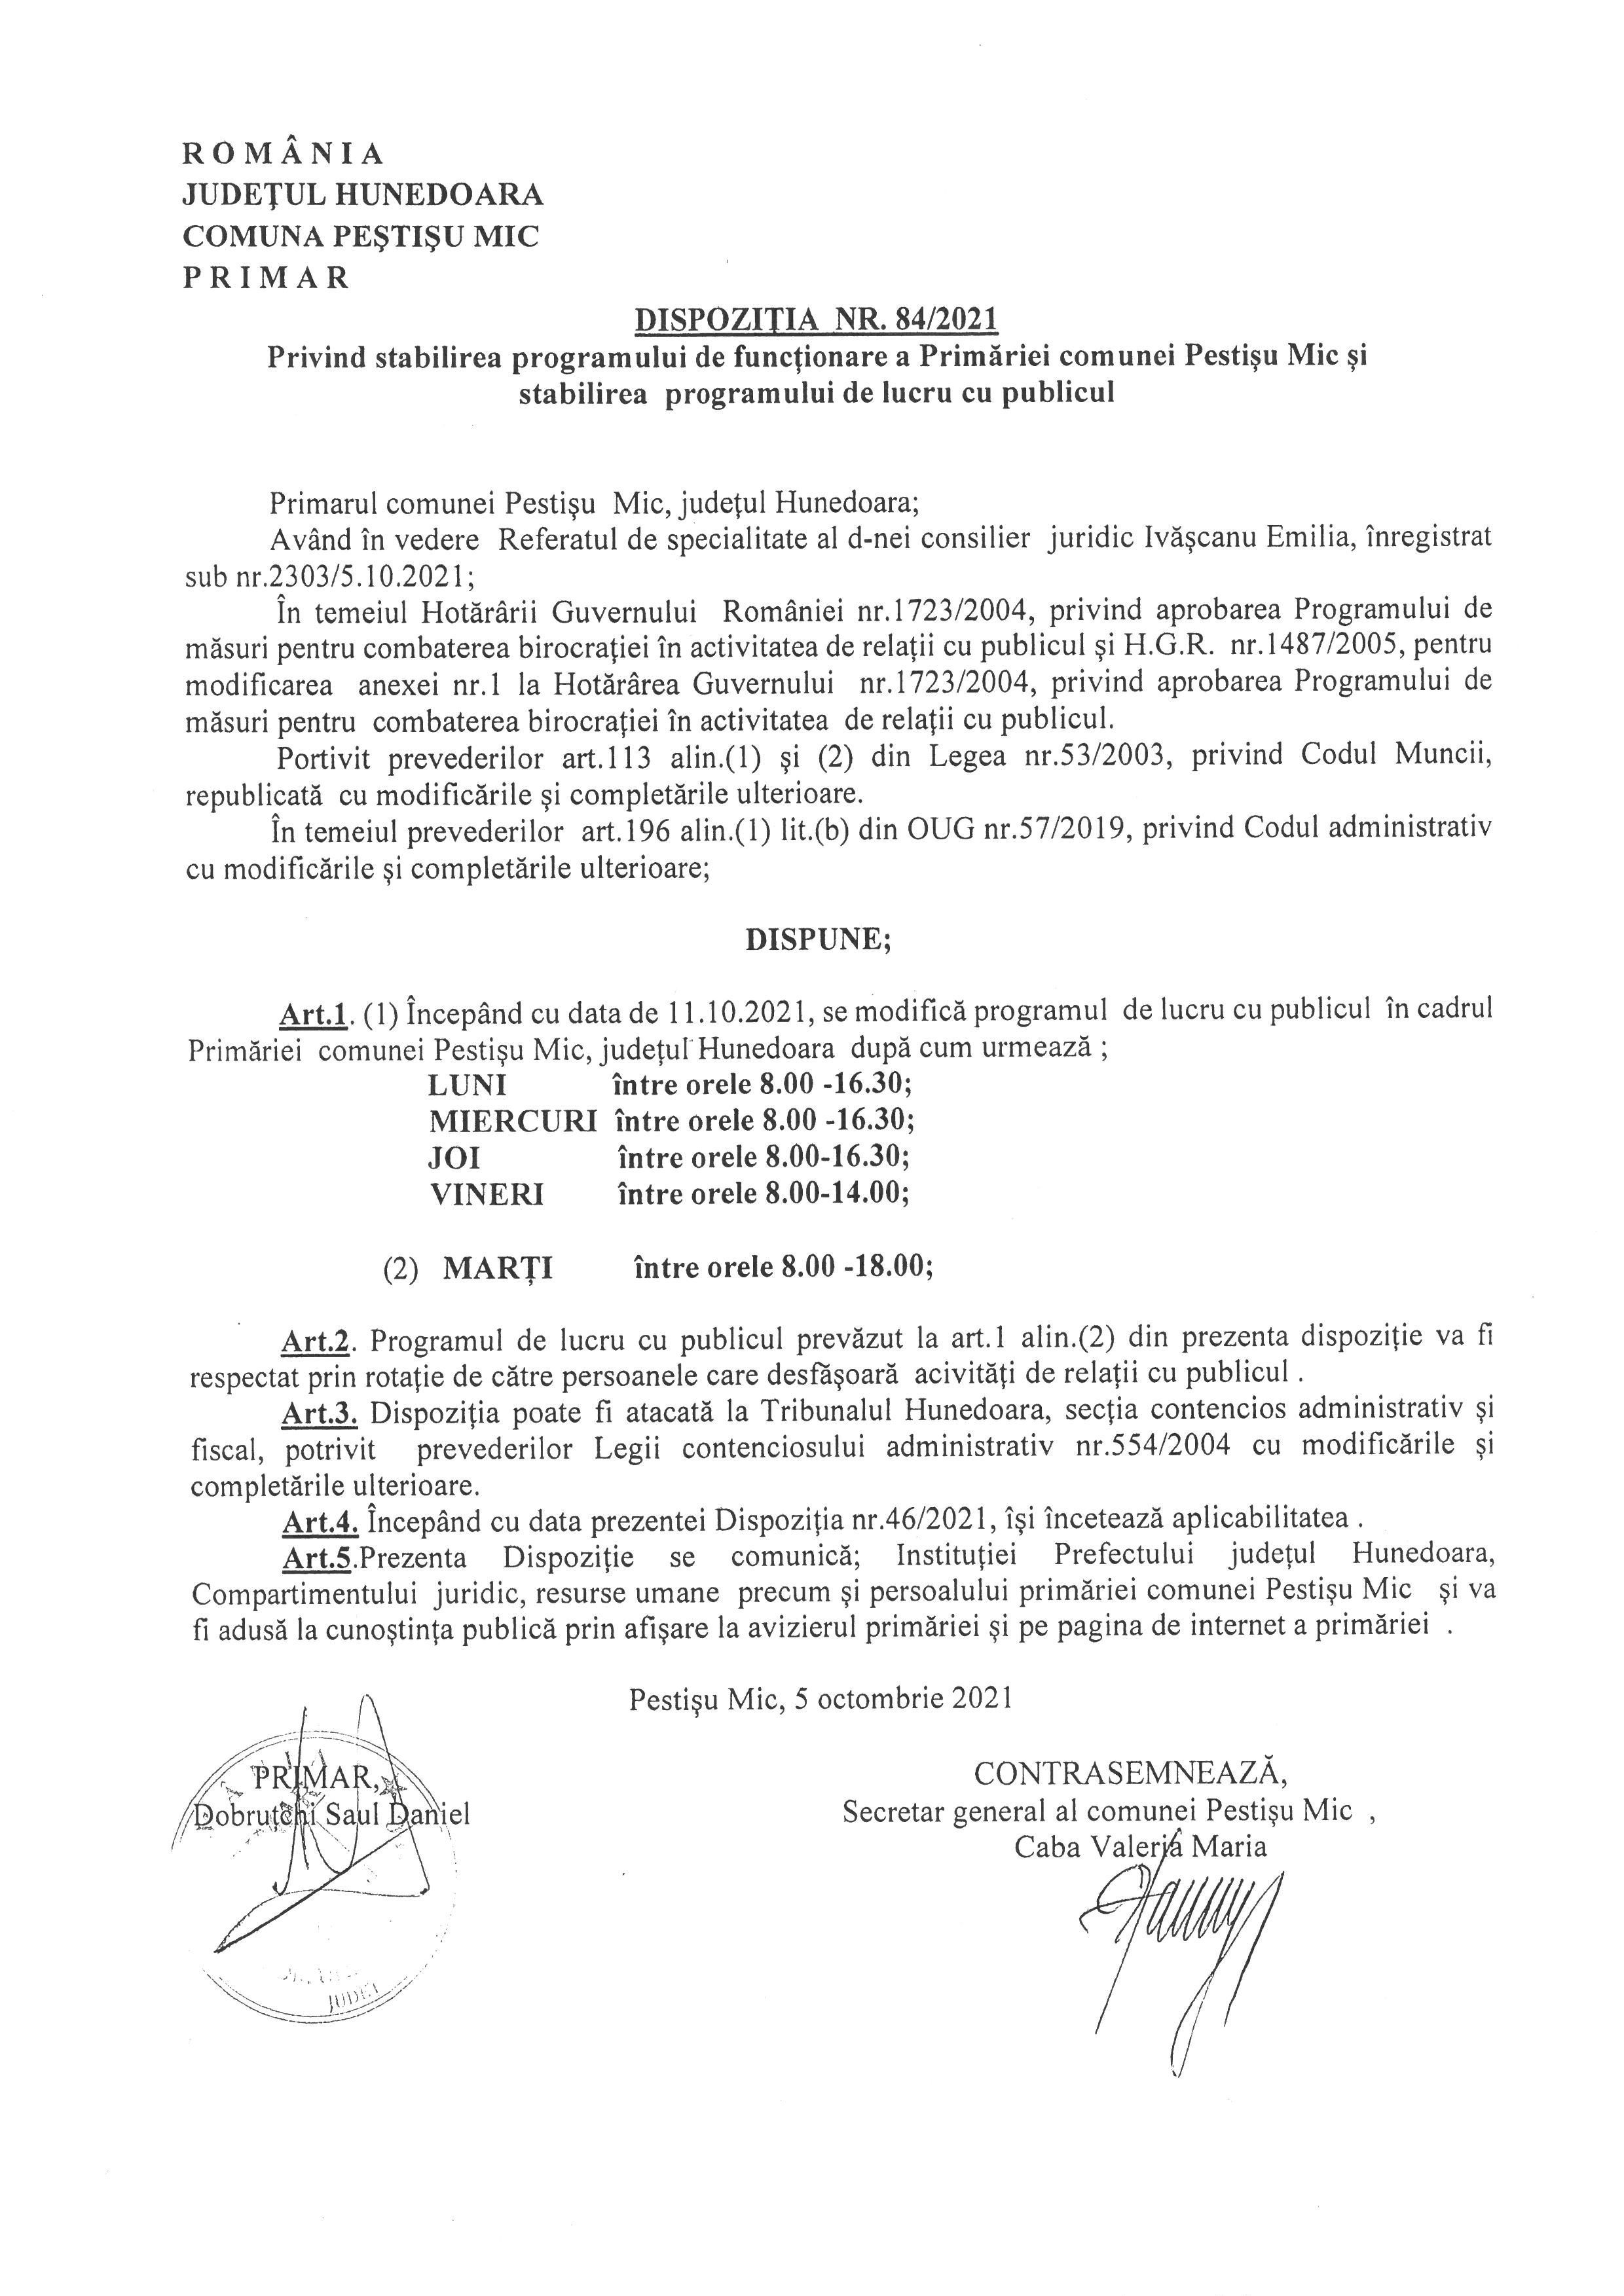 Dispoziția nr. 84 din 2021 privind stabilirea programului de funcționare a Primăriei comunei Pestișu Mic și stabilirea programului de lucru cu publicul